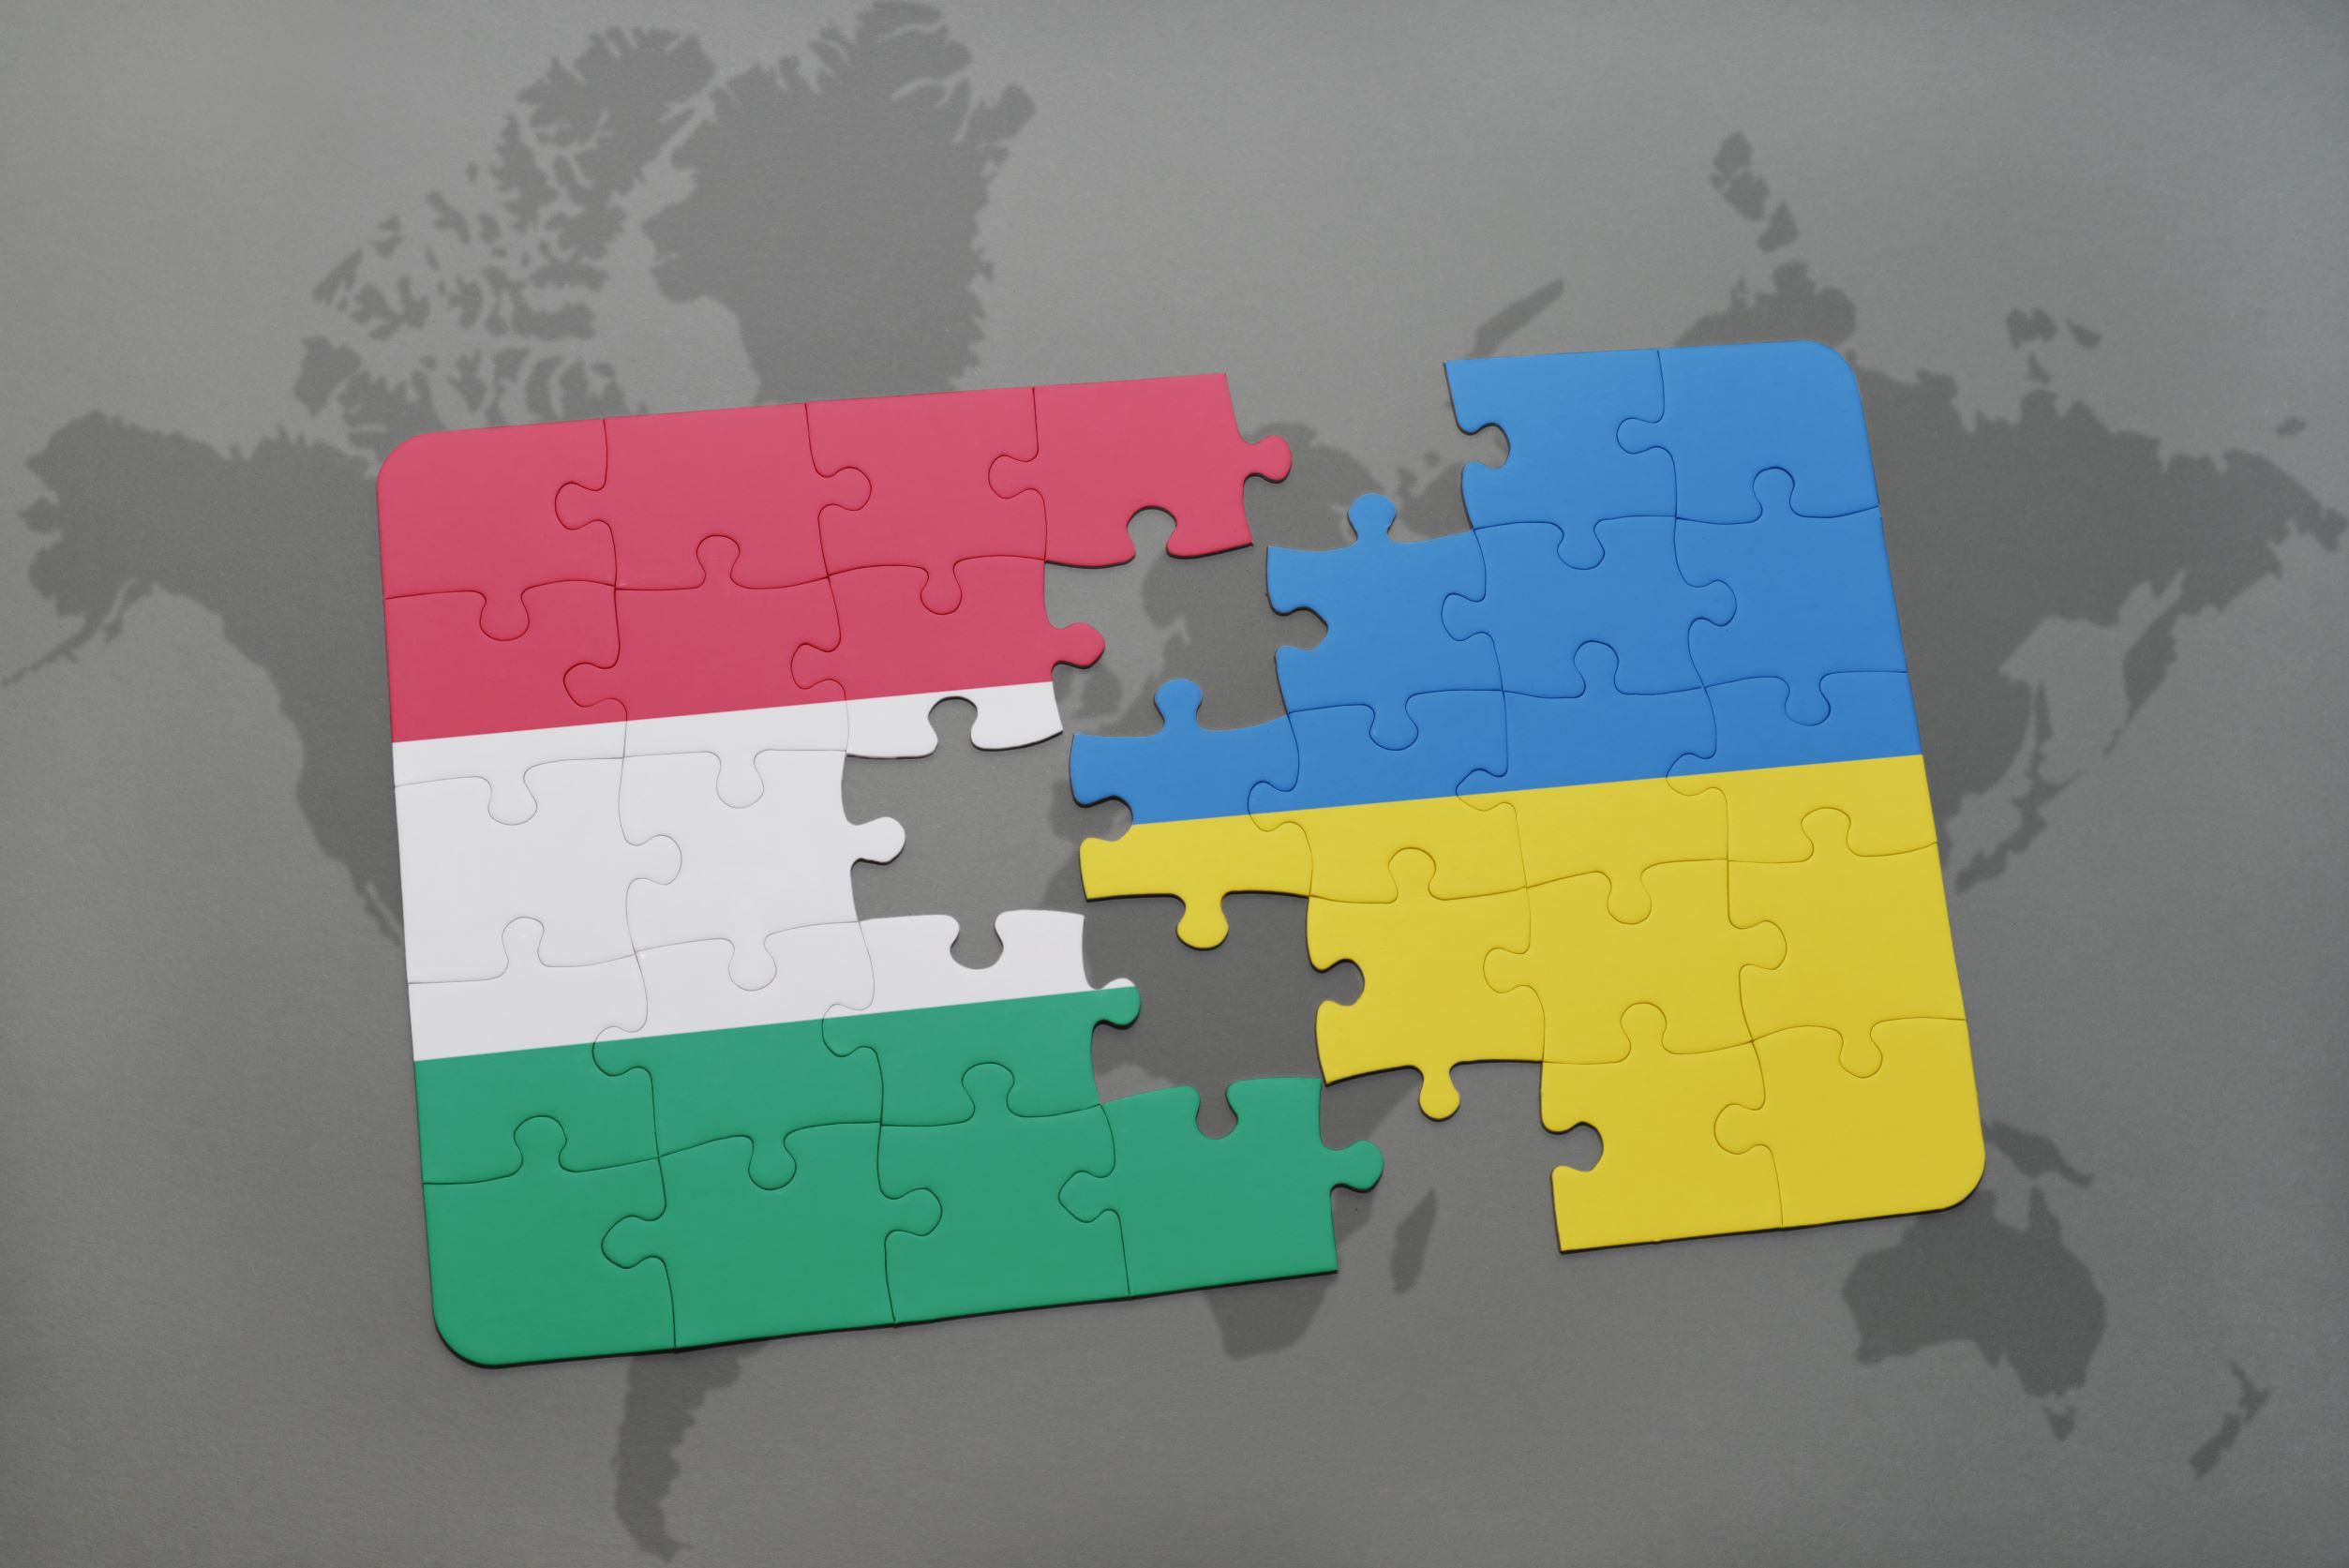 Sokat erősödtek a magyar-ukrán gazdasági kapcsolatok az elmúlt évtizedben